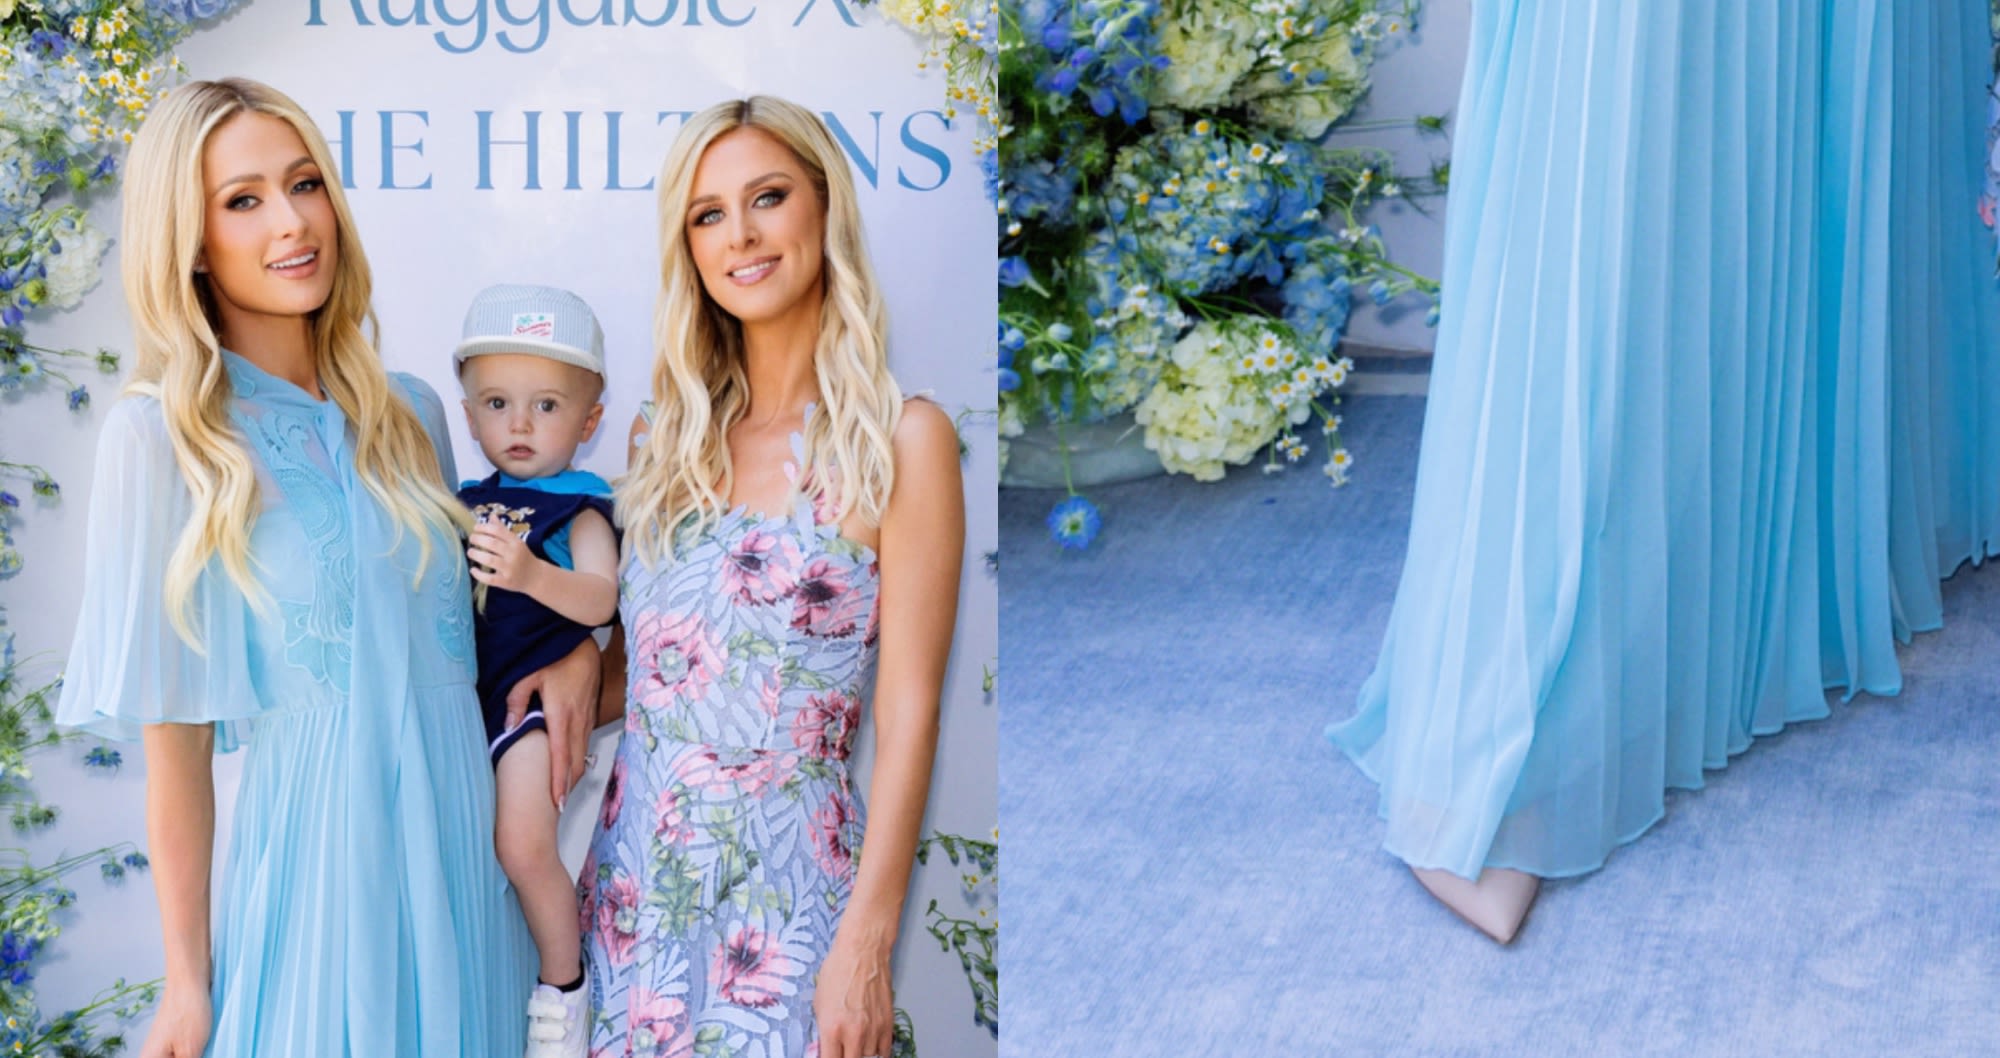 Paris Hilton Dons Versatile Pumps With Blue Dress at at Ruggable x The Hiltons Launch